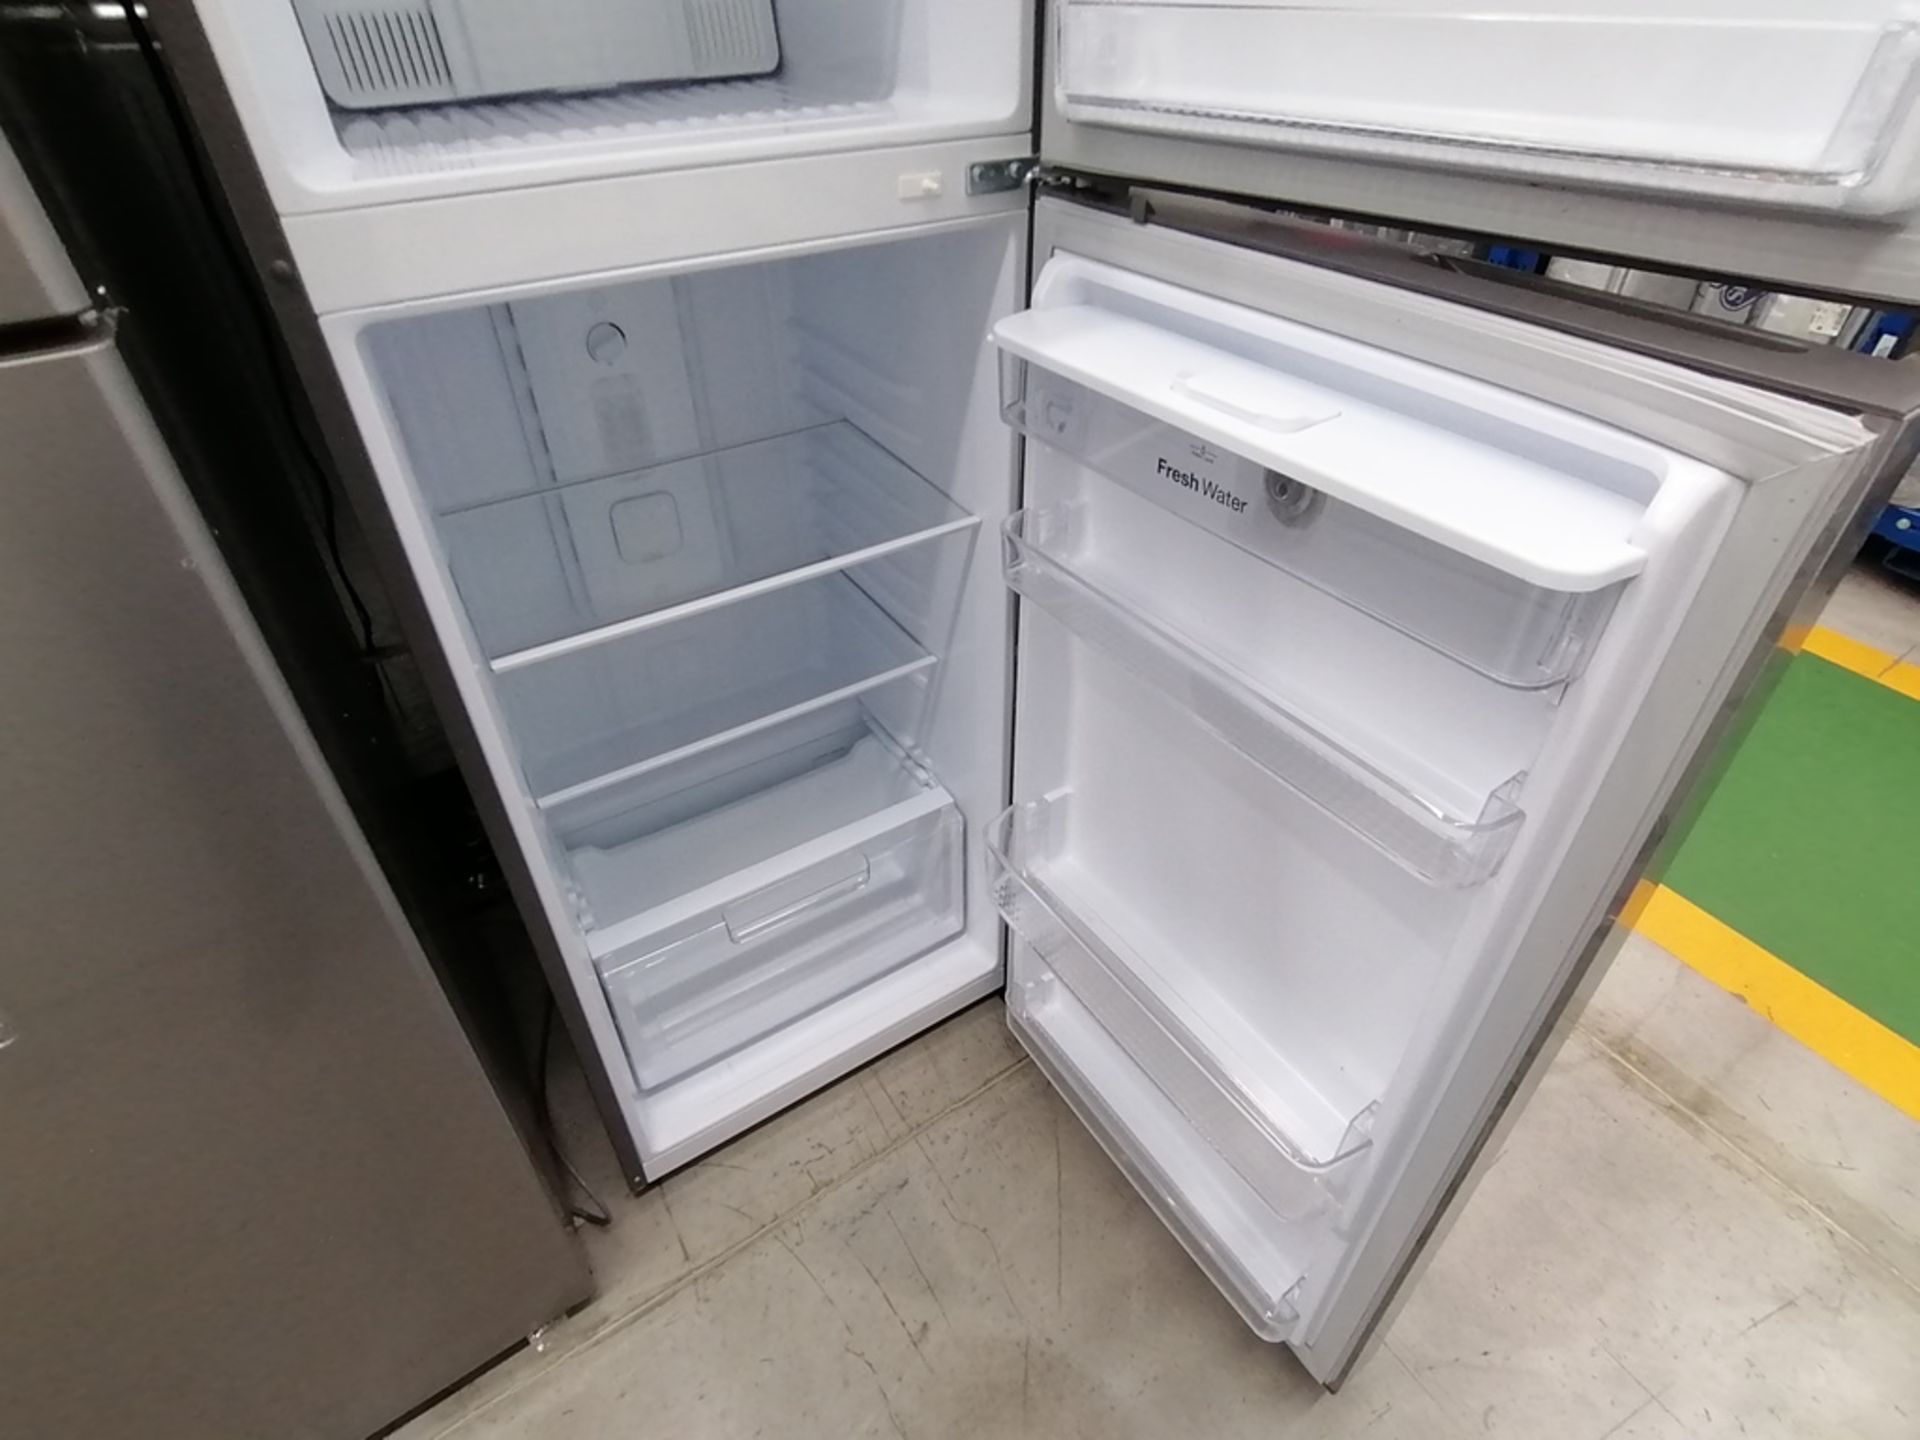 Lote de 2 refrigeradores incluye: 1 Refrigerador con dispensador de agua, Marca Winia, Modelo DFR40 - Image 5 of 17